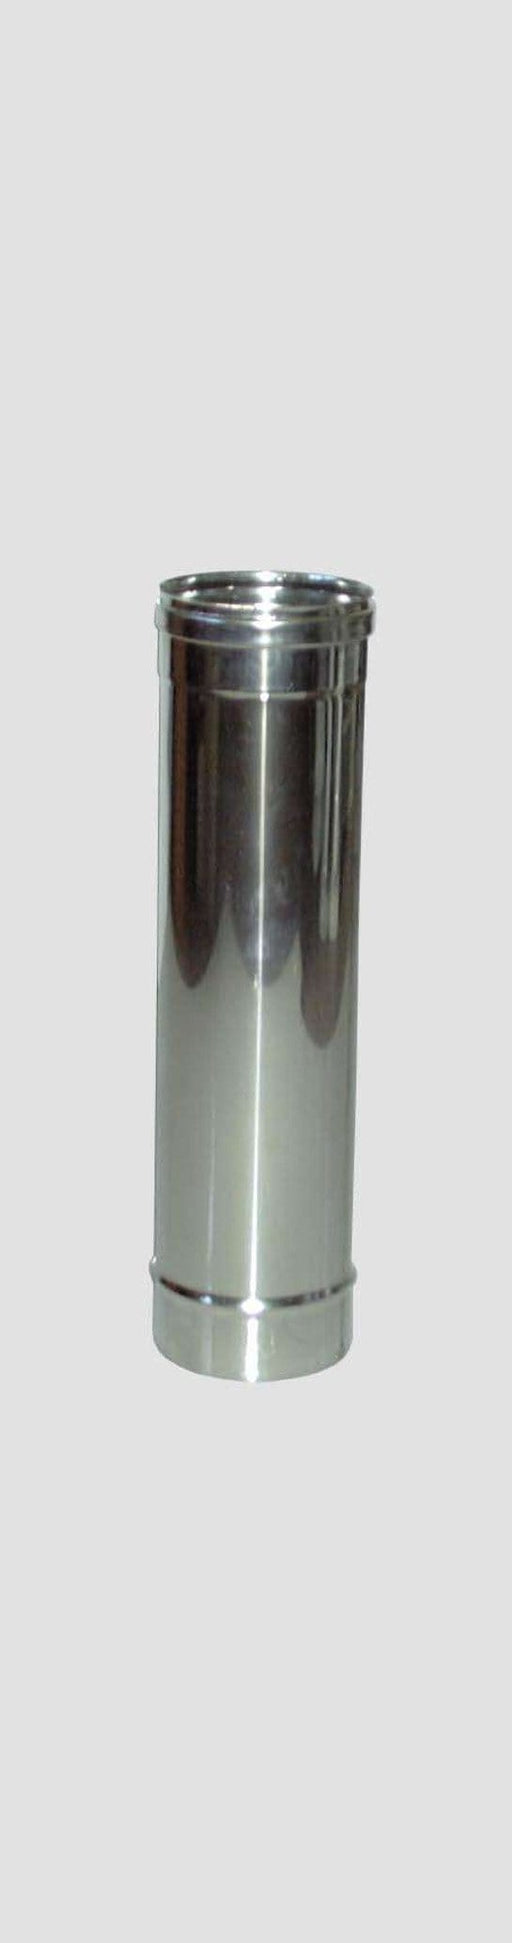 Tubo Diritto Inox AISI 304 per Stufe - Altezza 50 cm - Diametro 10 cm MillStore